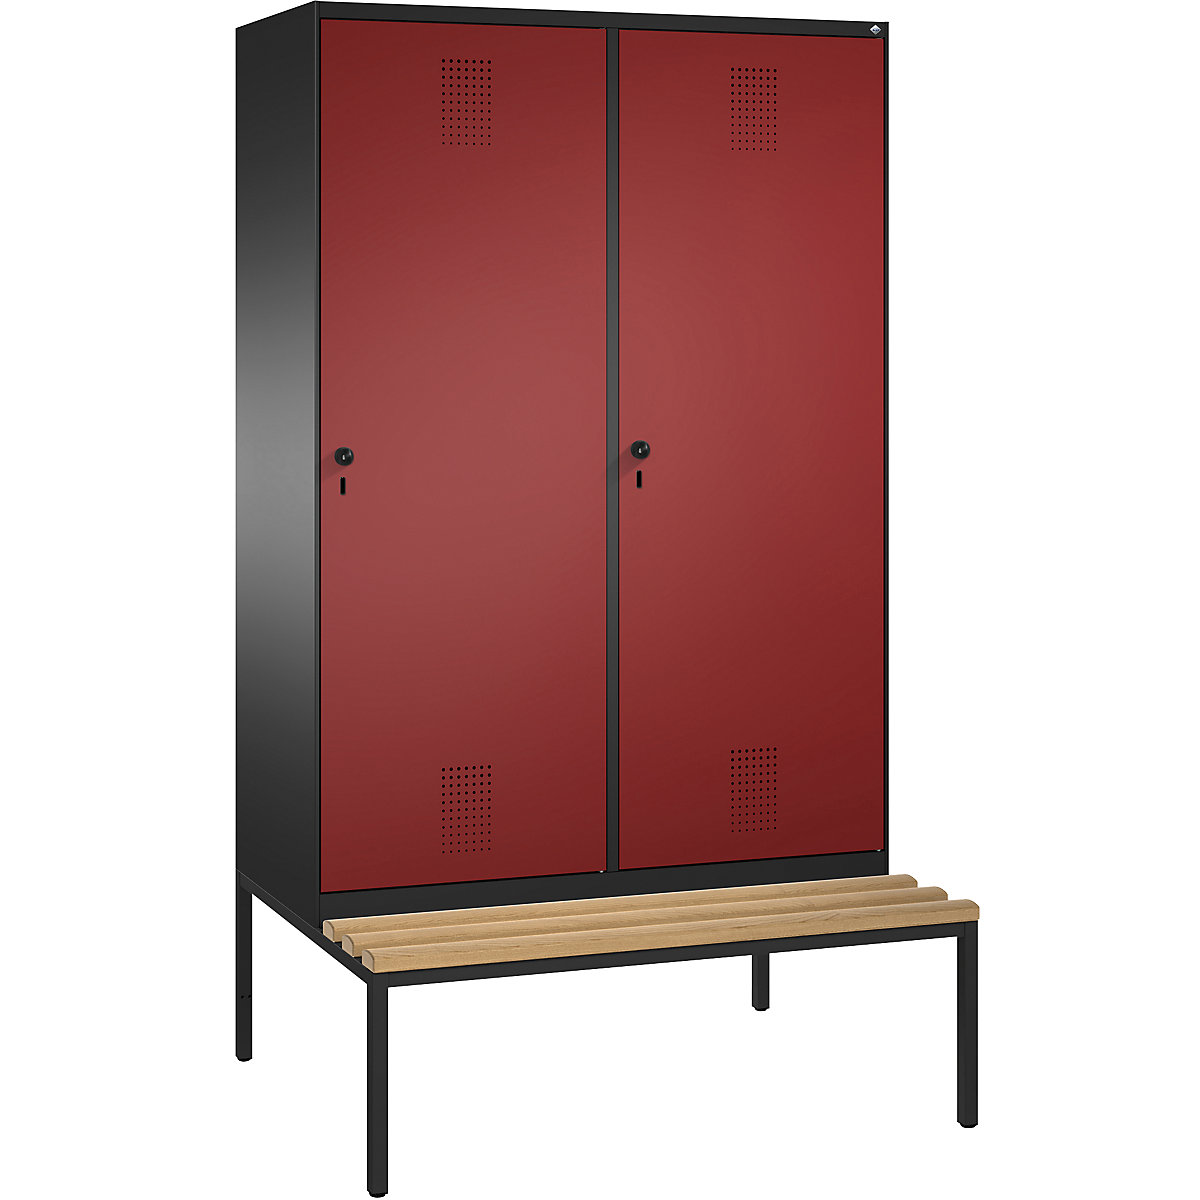 Šatní skříň s lavicí EVOLO s dveřmi přes 2 oddíly – C+P, 4 oddíly, 2 dveře, šířka oddílu 300 mm, černošedá / rubínová-9